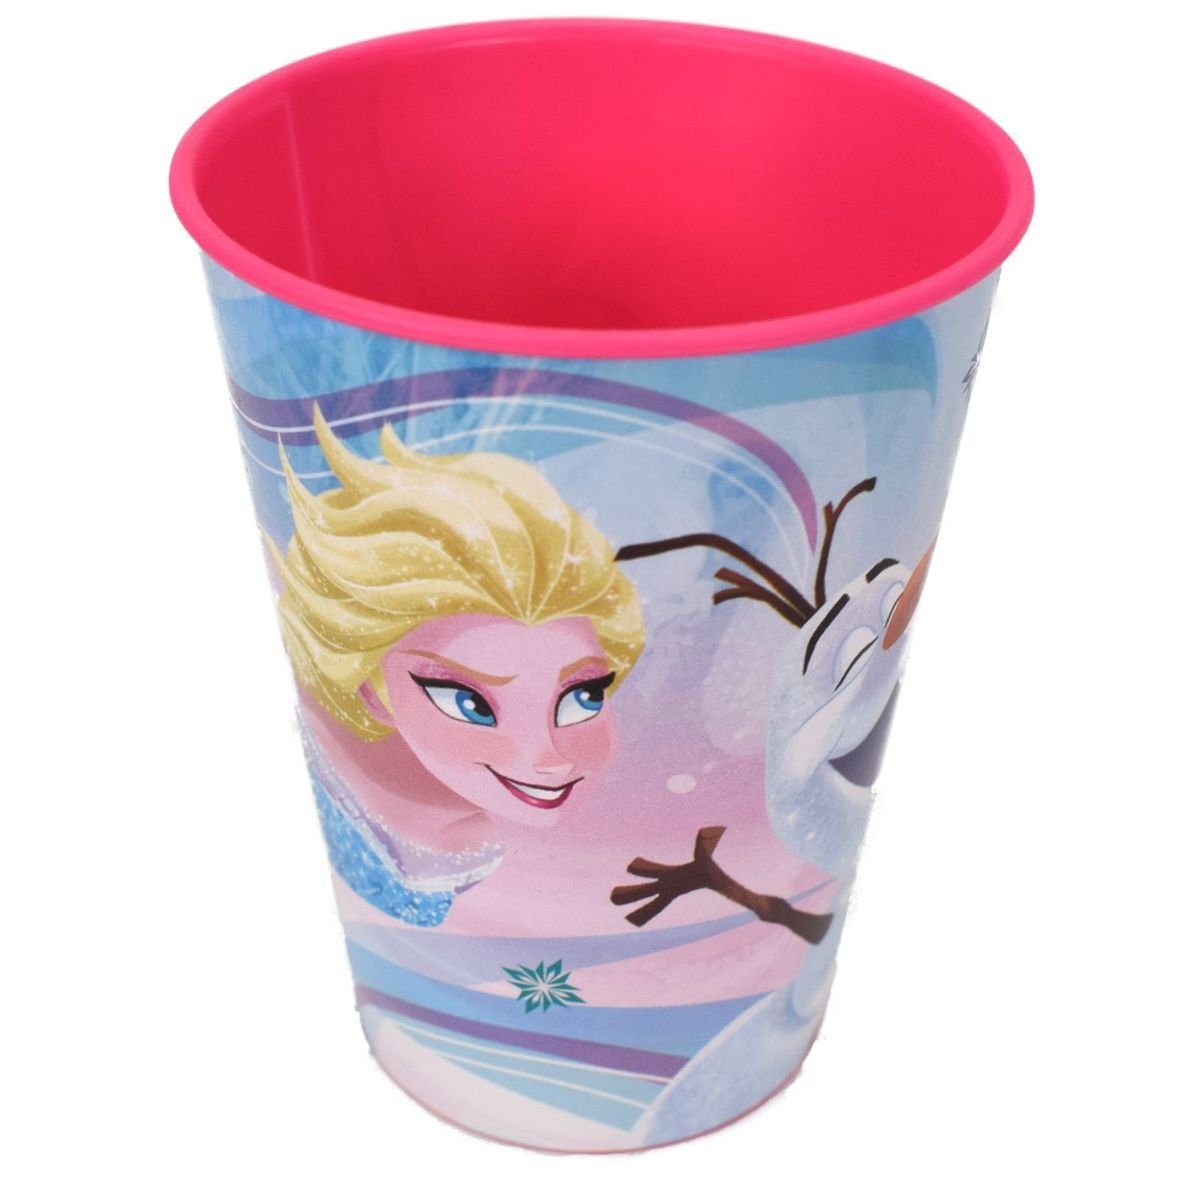 Stor Geschirr-Set Plastikbecher 280ml für Kinder Disney Frozen oder Peppa Wutz, Kunststoff Pink